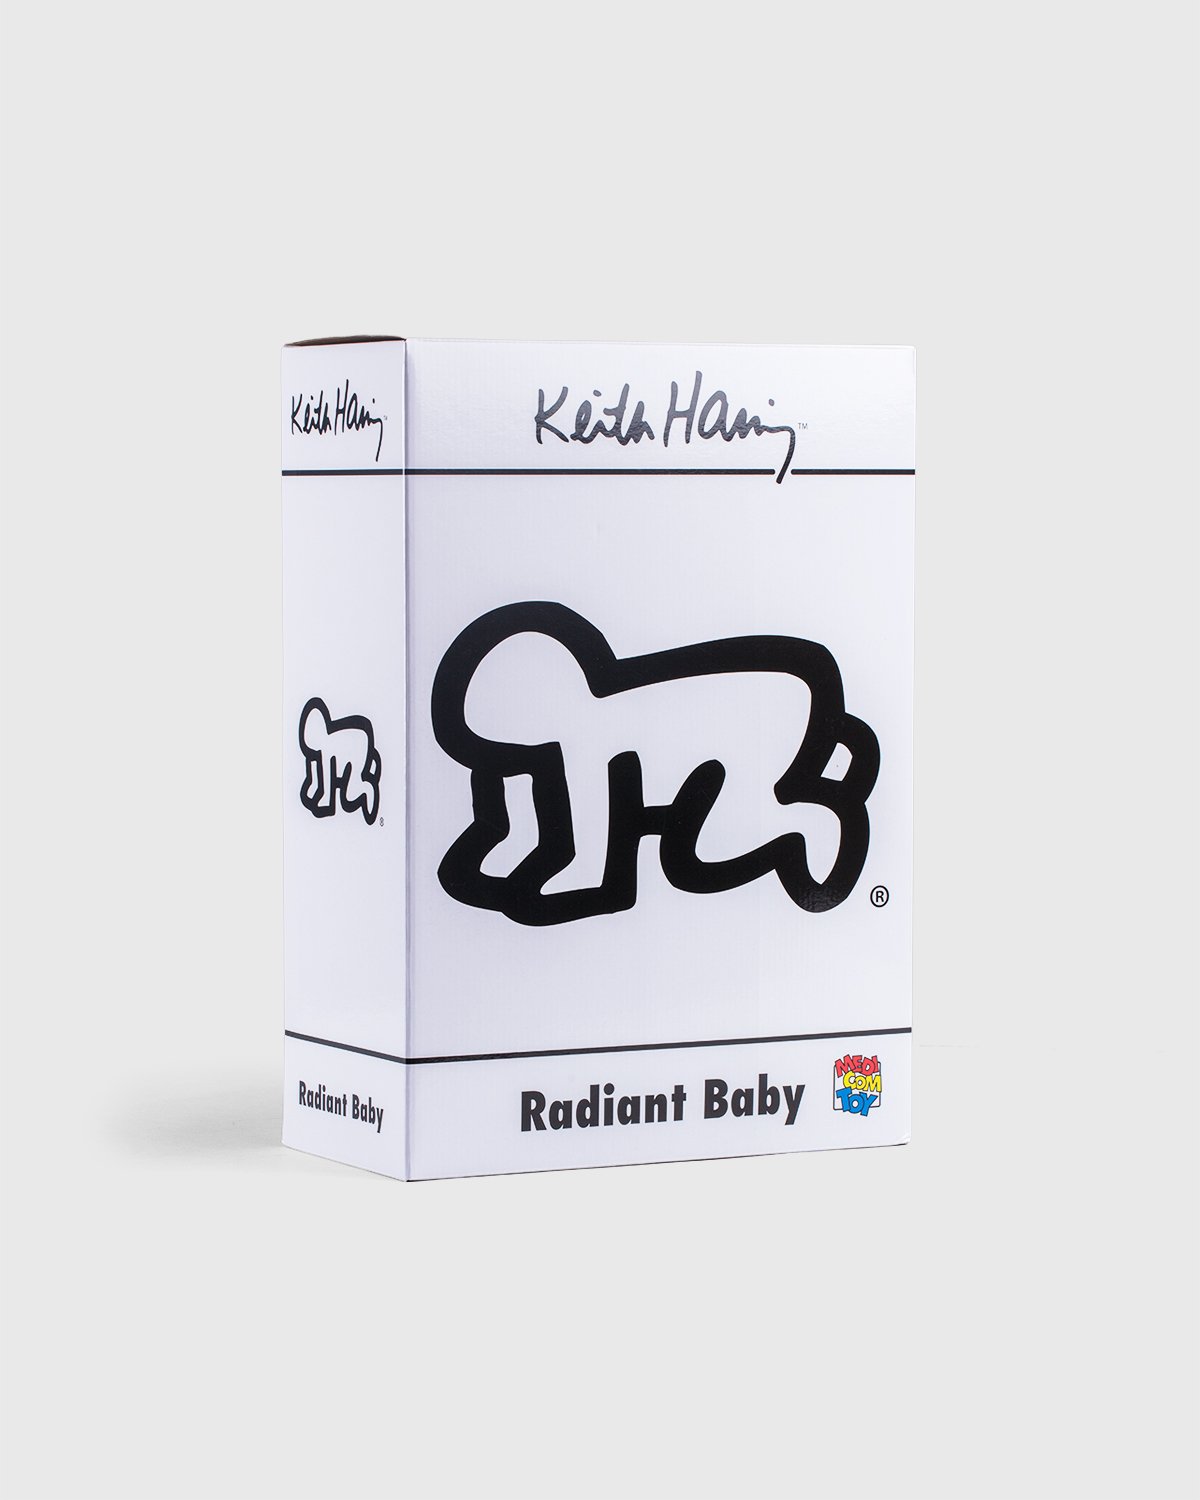 Medicom - Keith Haring Radiant Baby Statue White - Lifestyle - White - Image 4